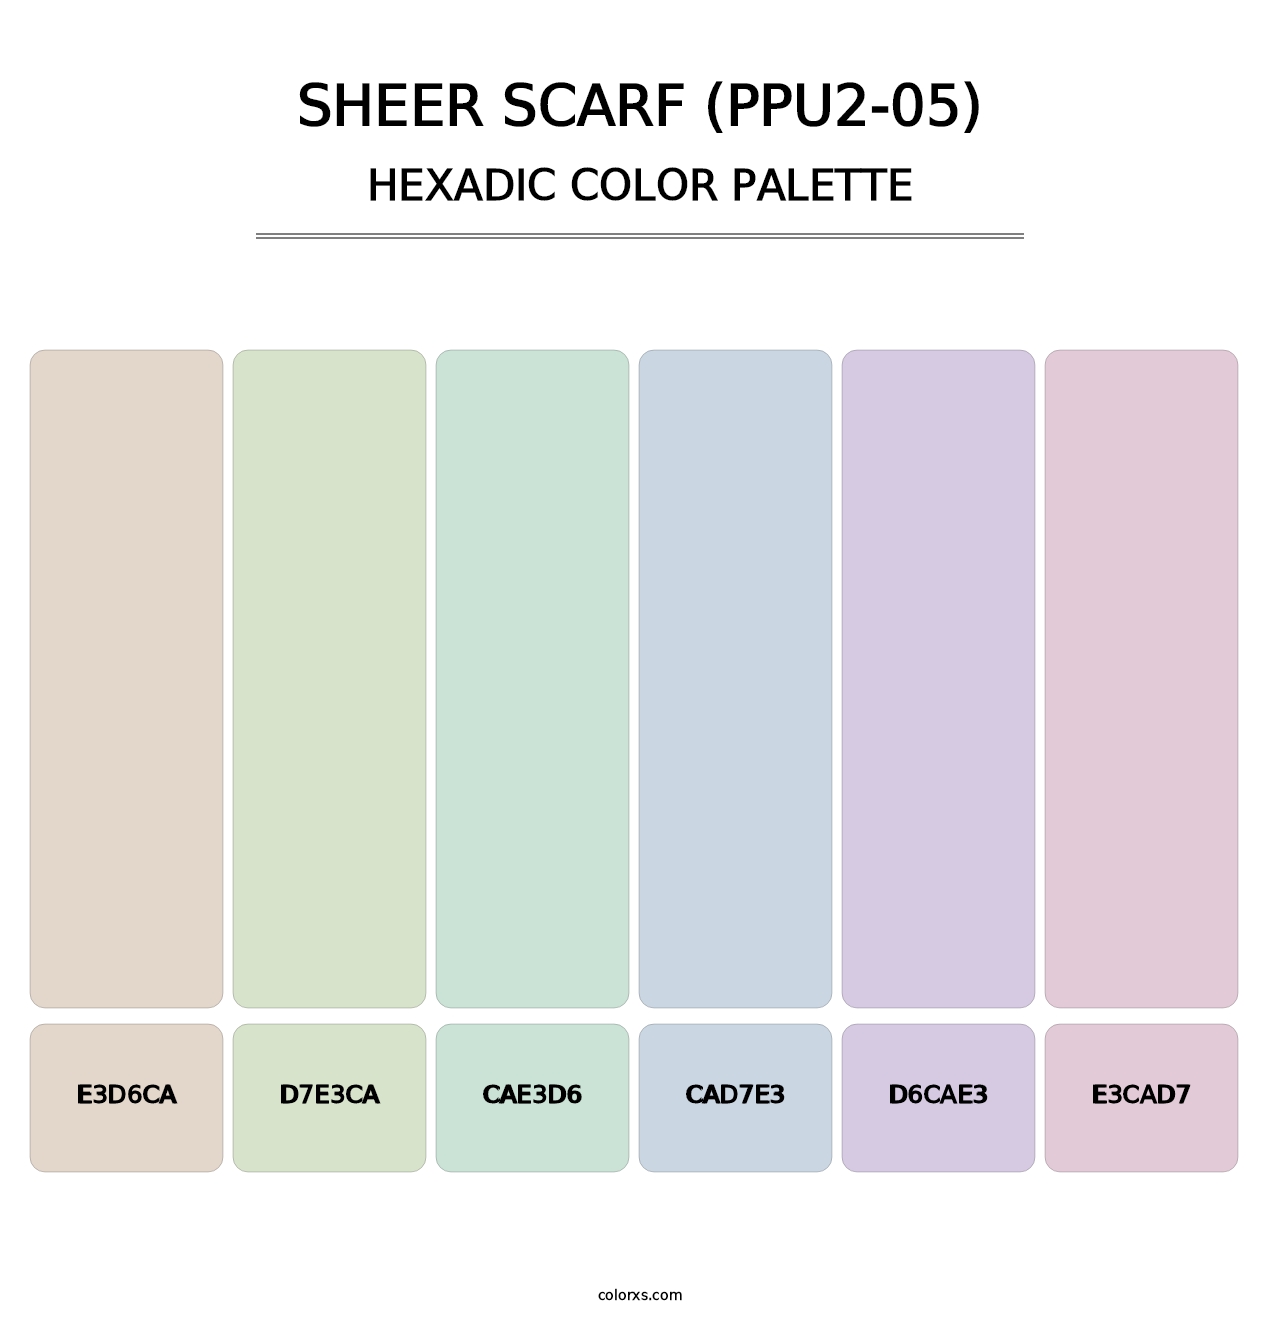 Sheer Scarf (PPU2-05) - Hexadic Color Palette